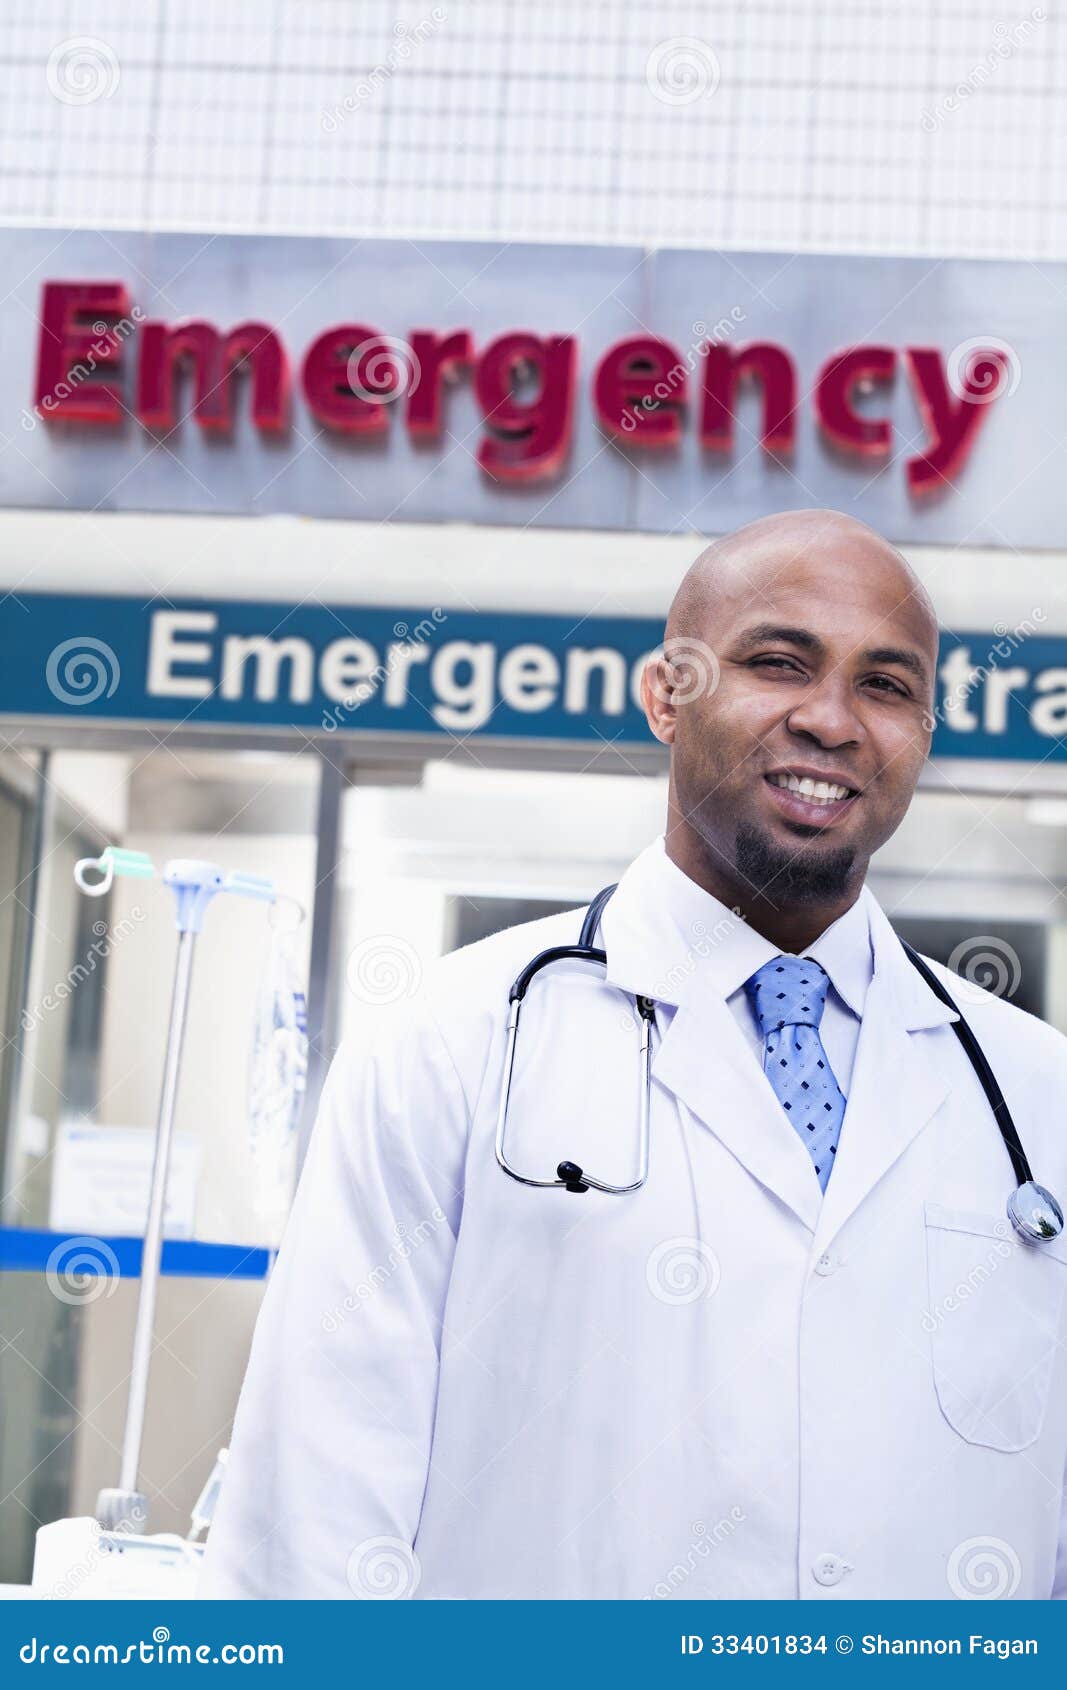 Portret uśmiechnięty doktorski outside szpital, izba pogotowia podpisuje wewnątrz tło